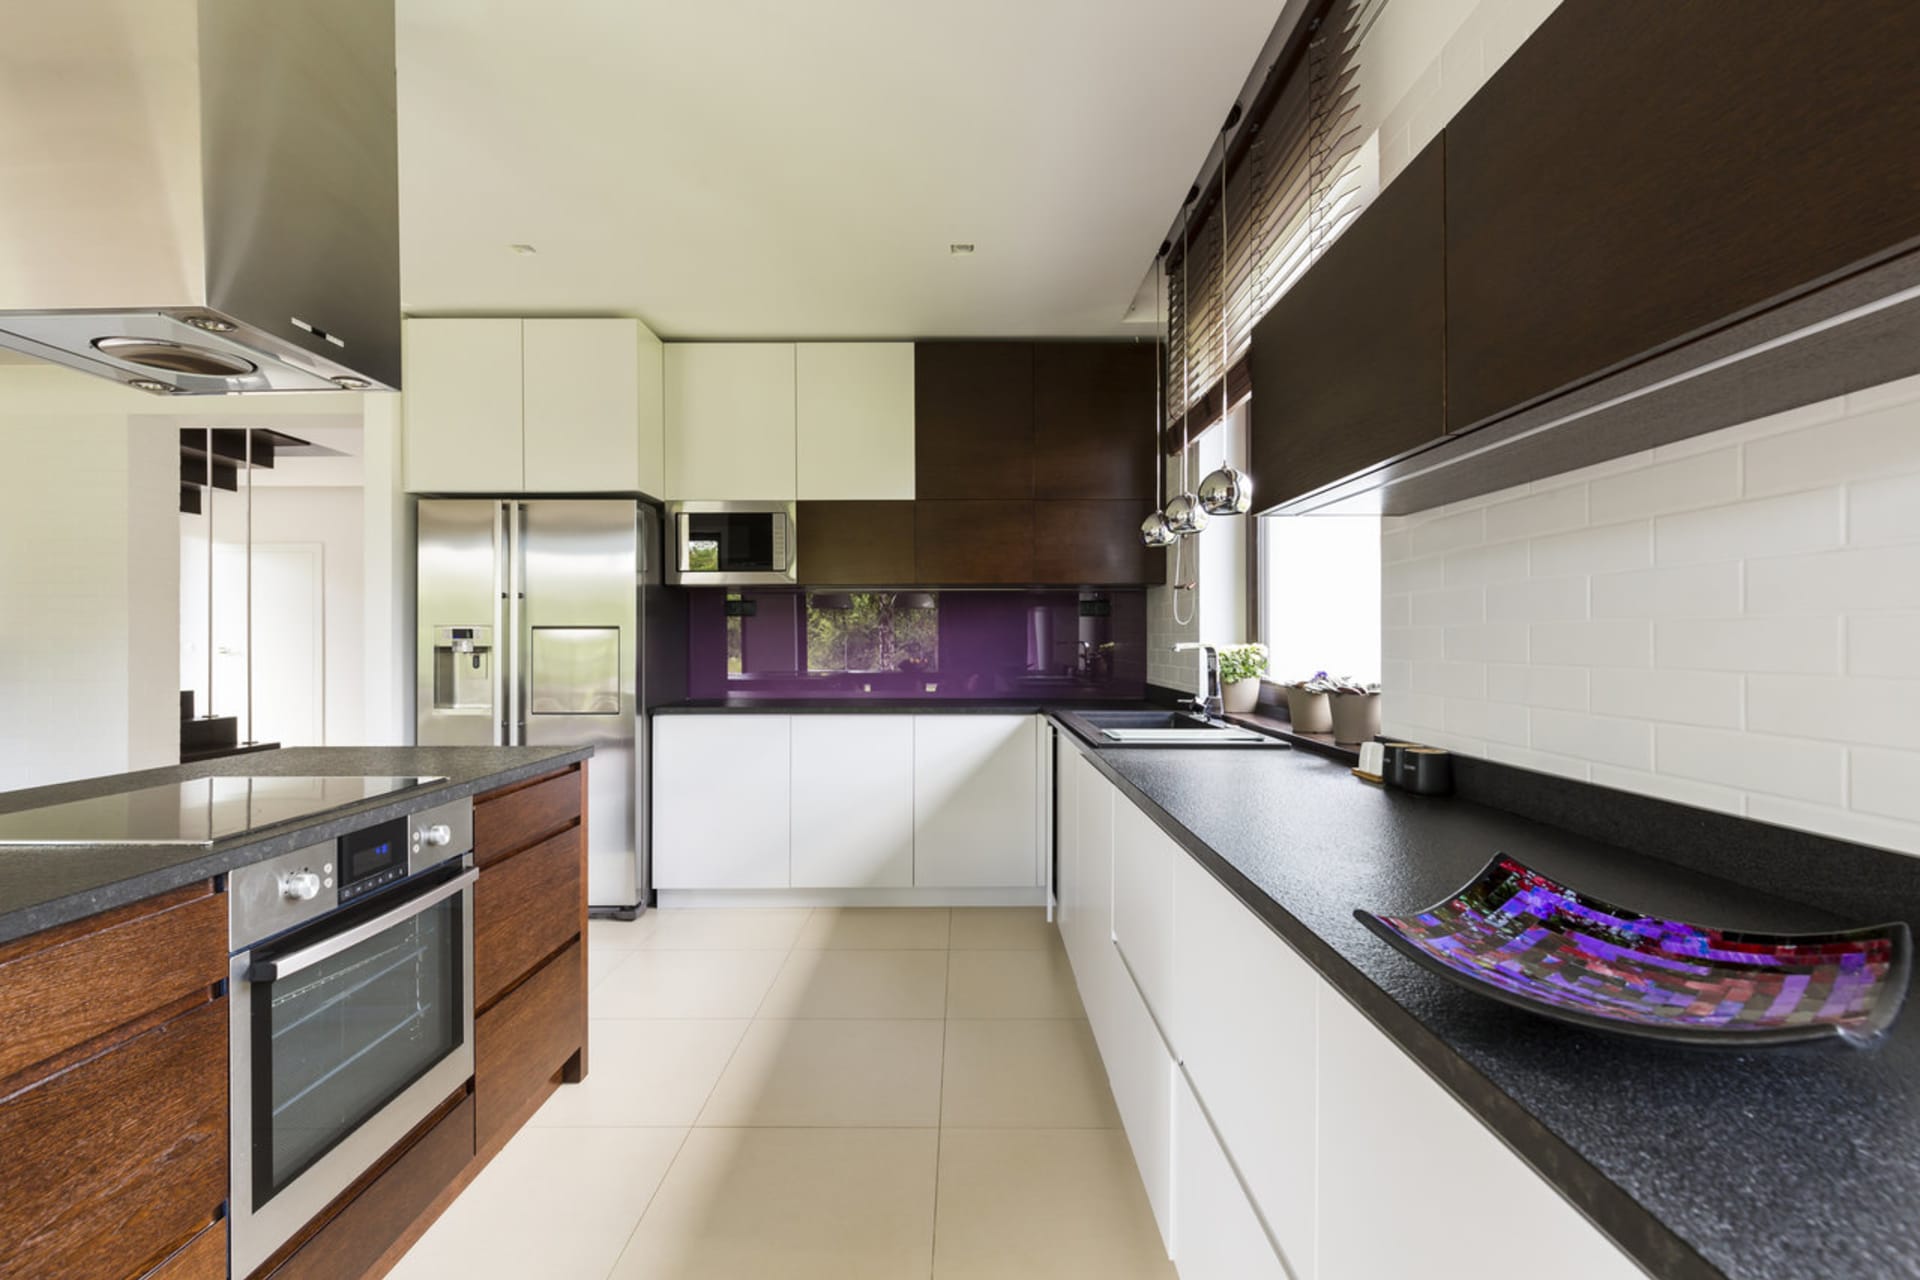 Fialová barva v interiéru: Pokud je vám tedy fialová barva blízká nebo vás něčím přitahuje, nebojte se ji použít – a to například platí i pro kuchyni s oknem.